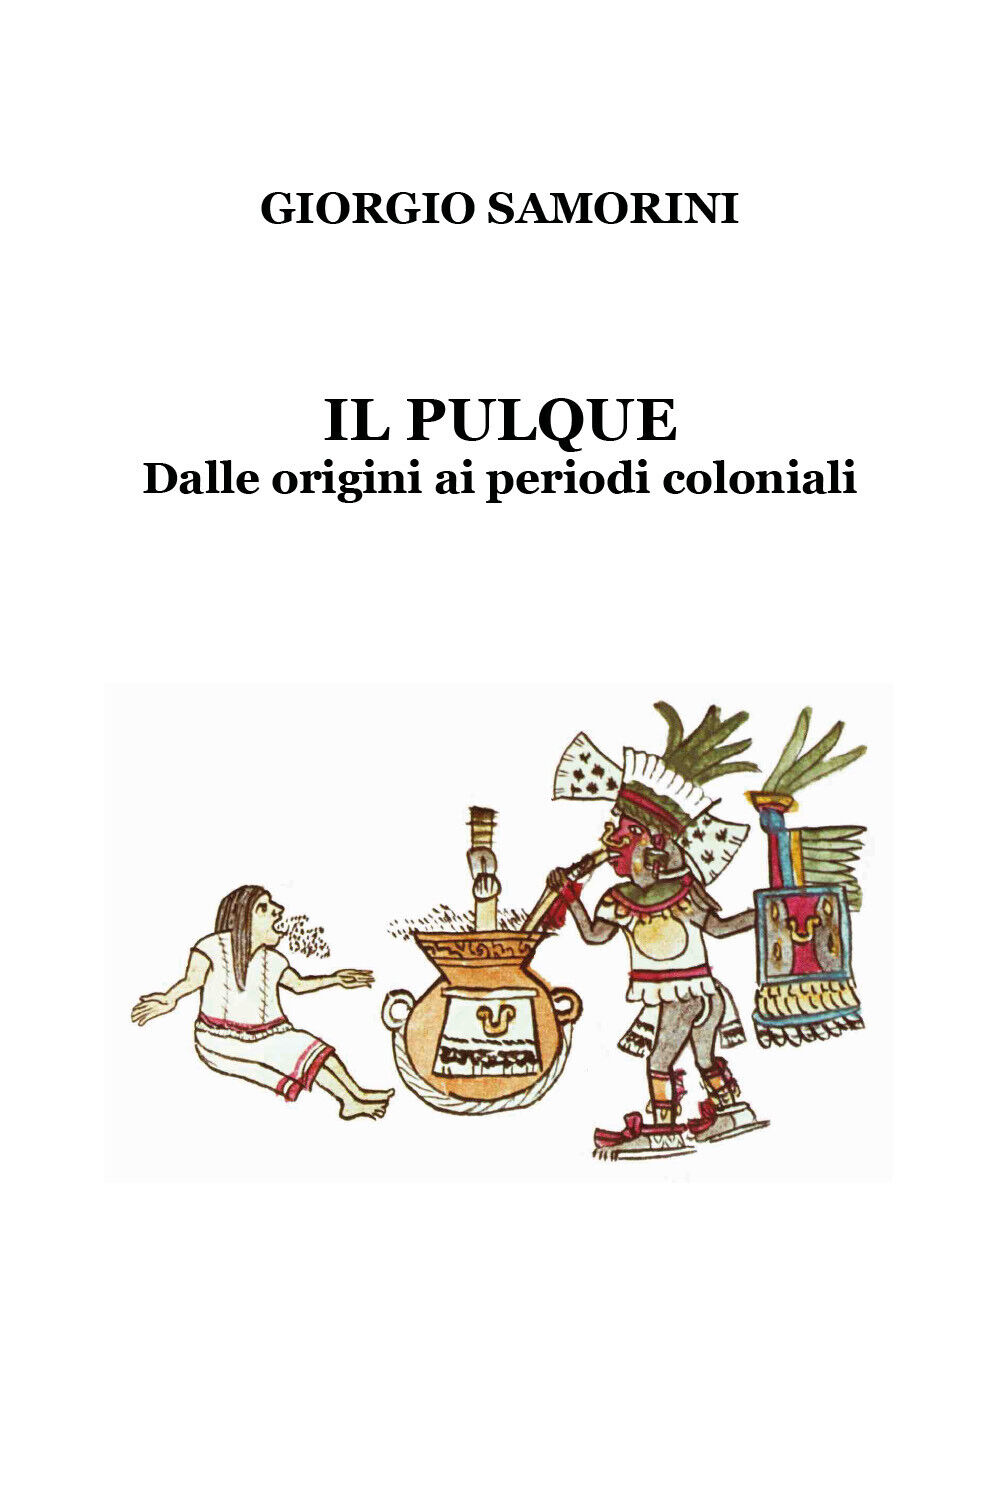 Il pulque. Dalle origini ai periodi coloniali -  Giorgio Samorini,  2018,  Youca